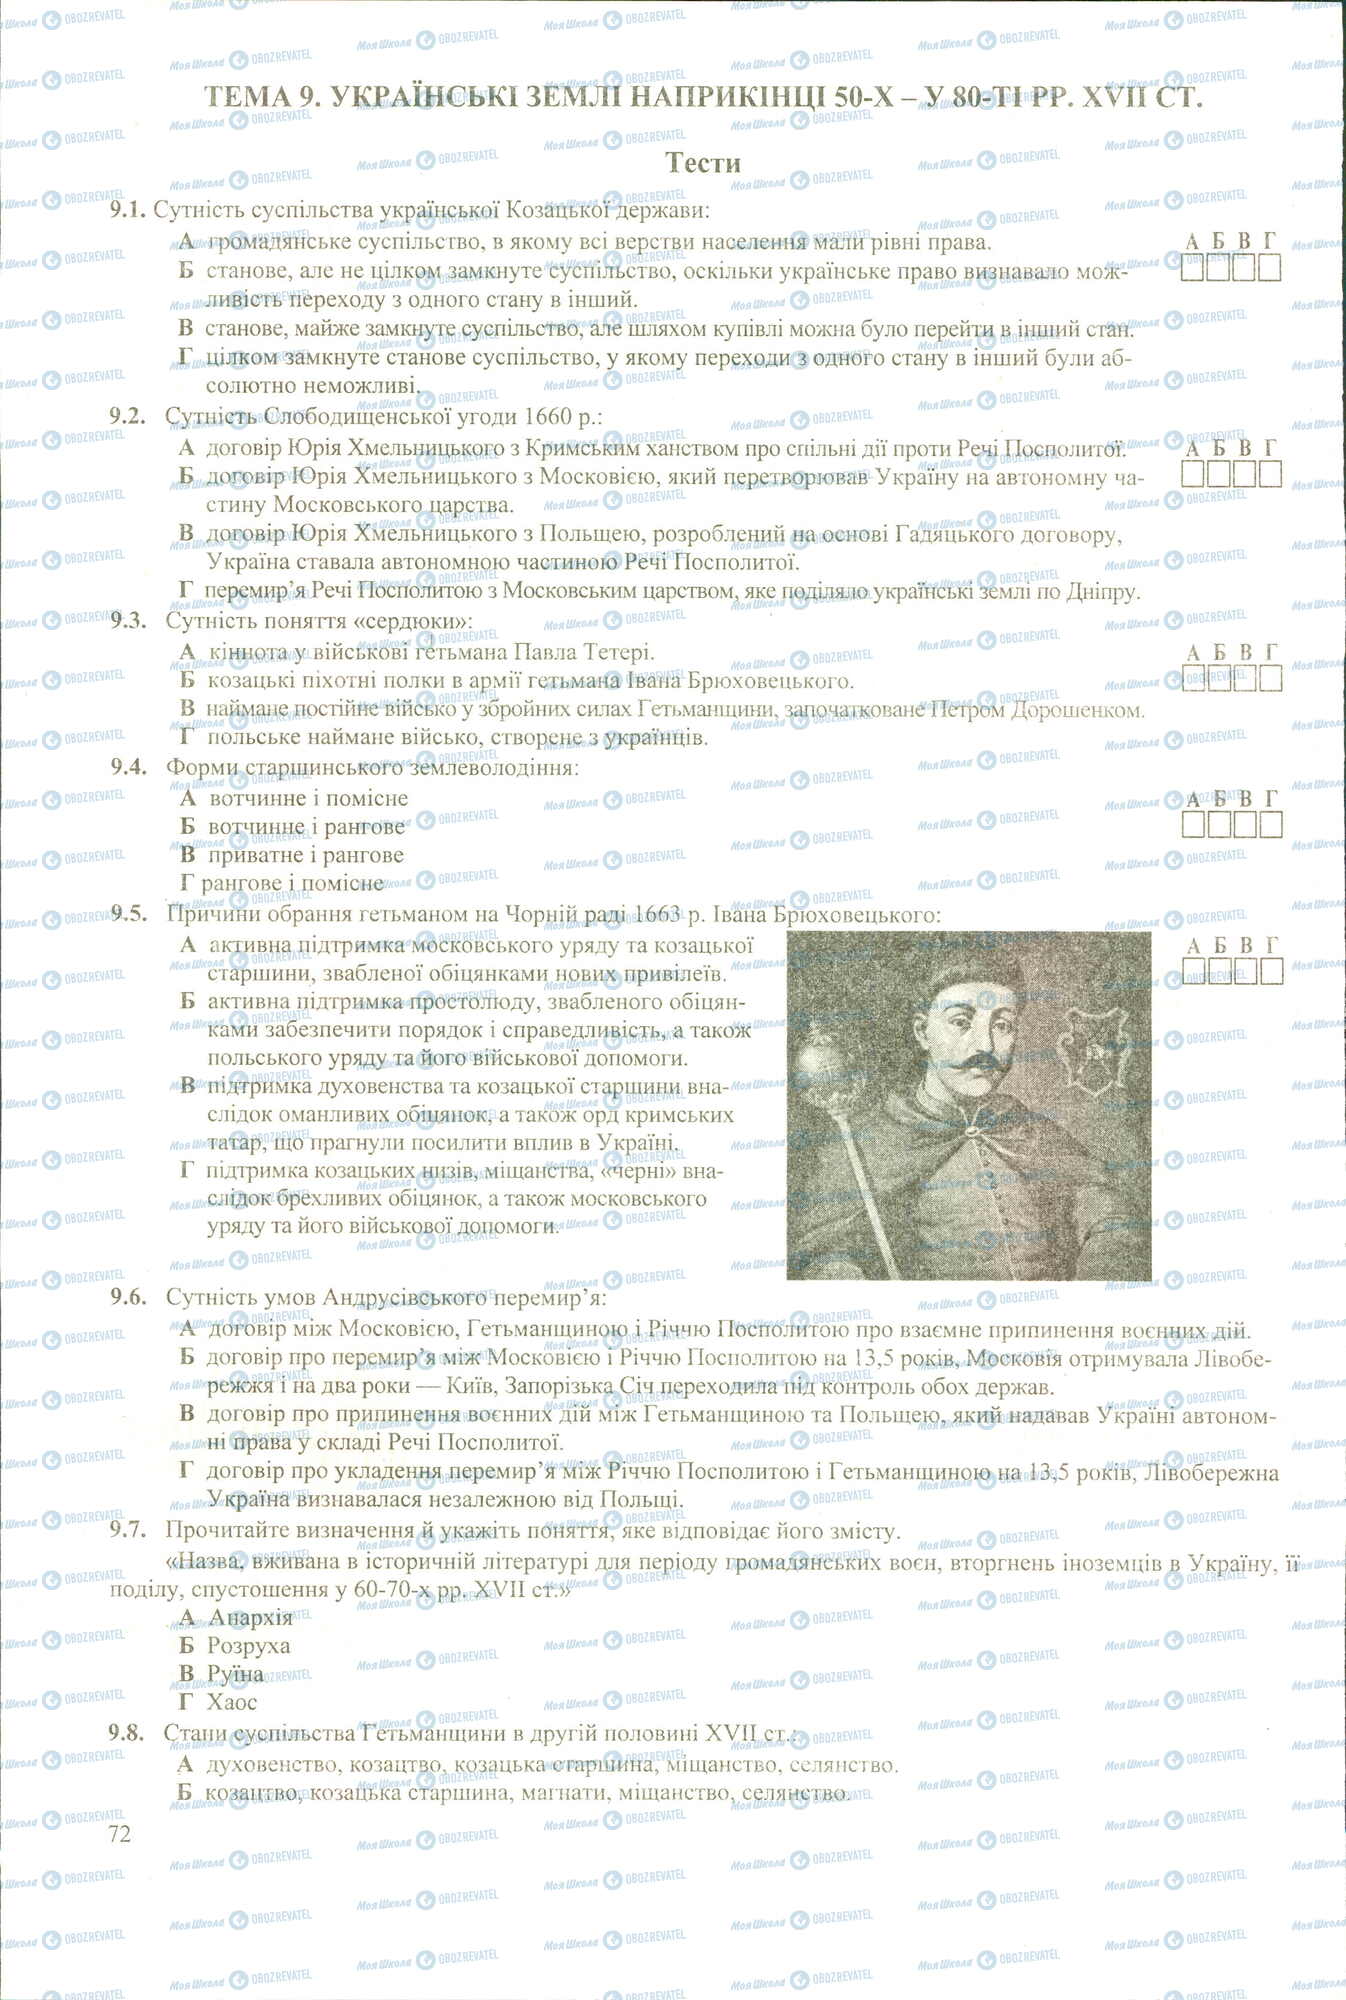 ЗНО История Украины 11 класс страница 1-8